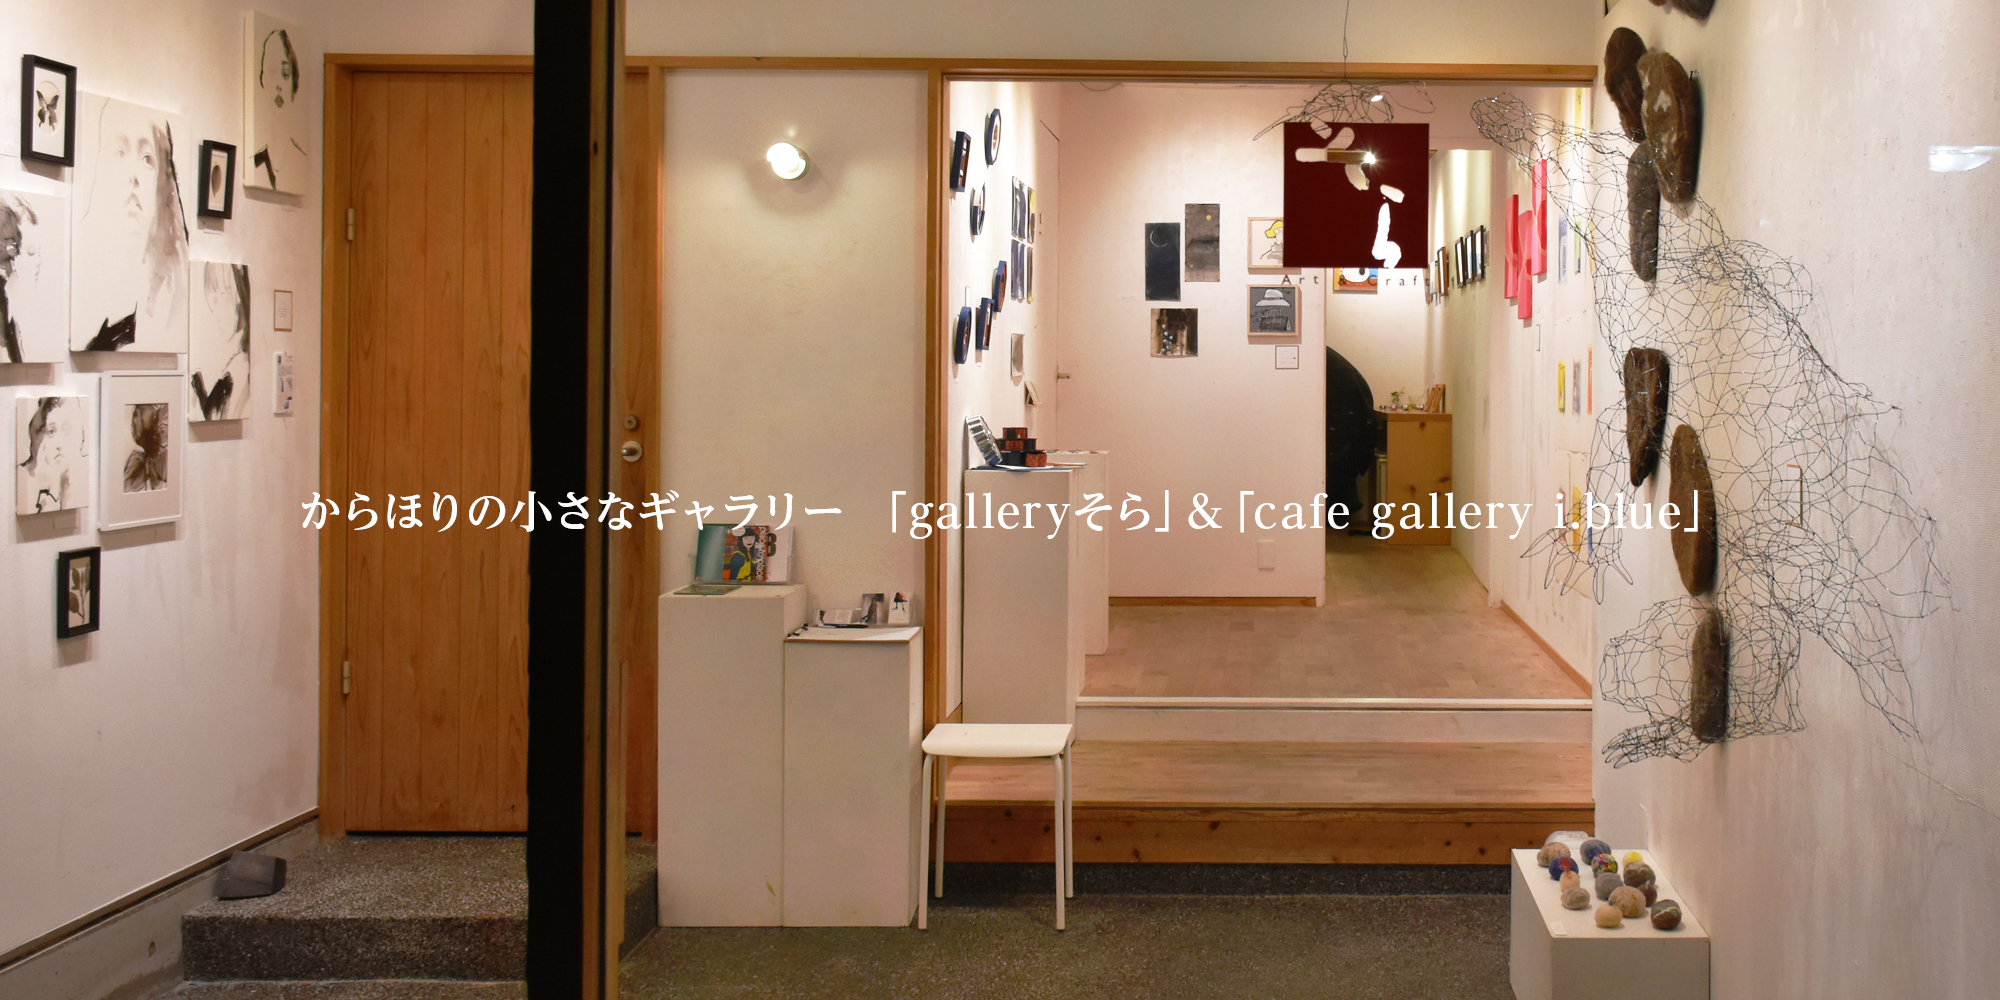 からほりの小さなギャラリー 「galleryそら」&「cafe gallery i.blue」